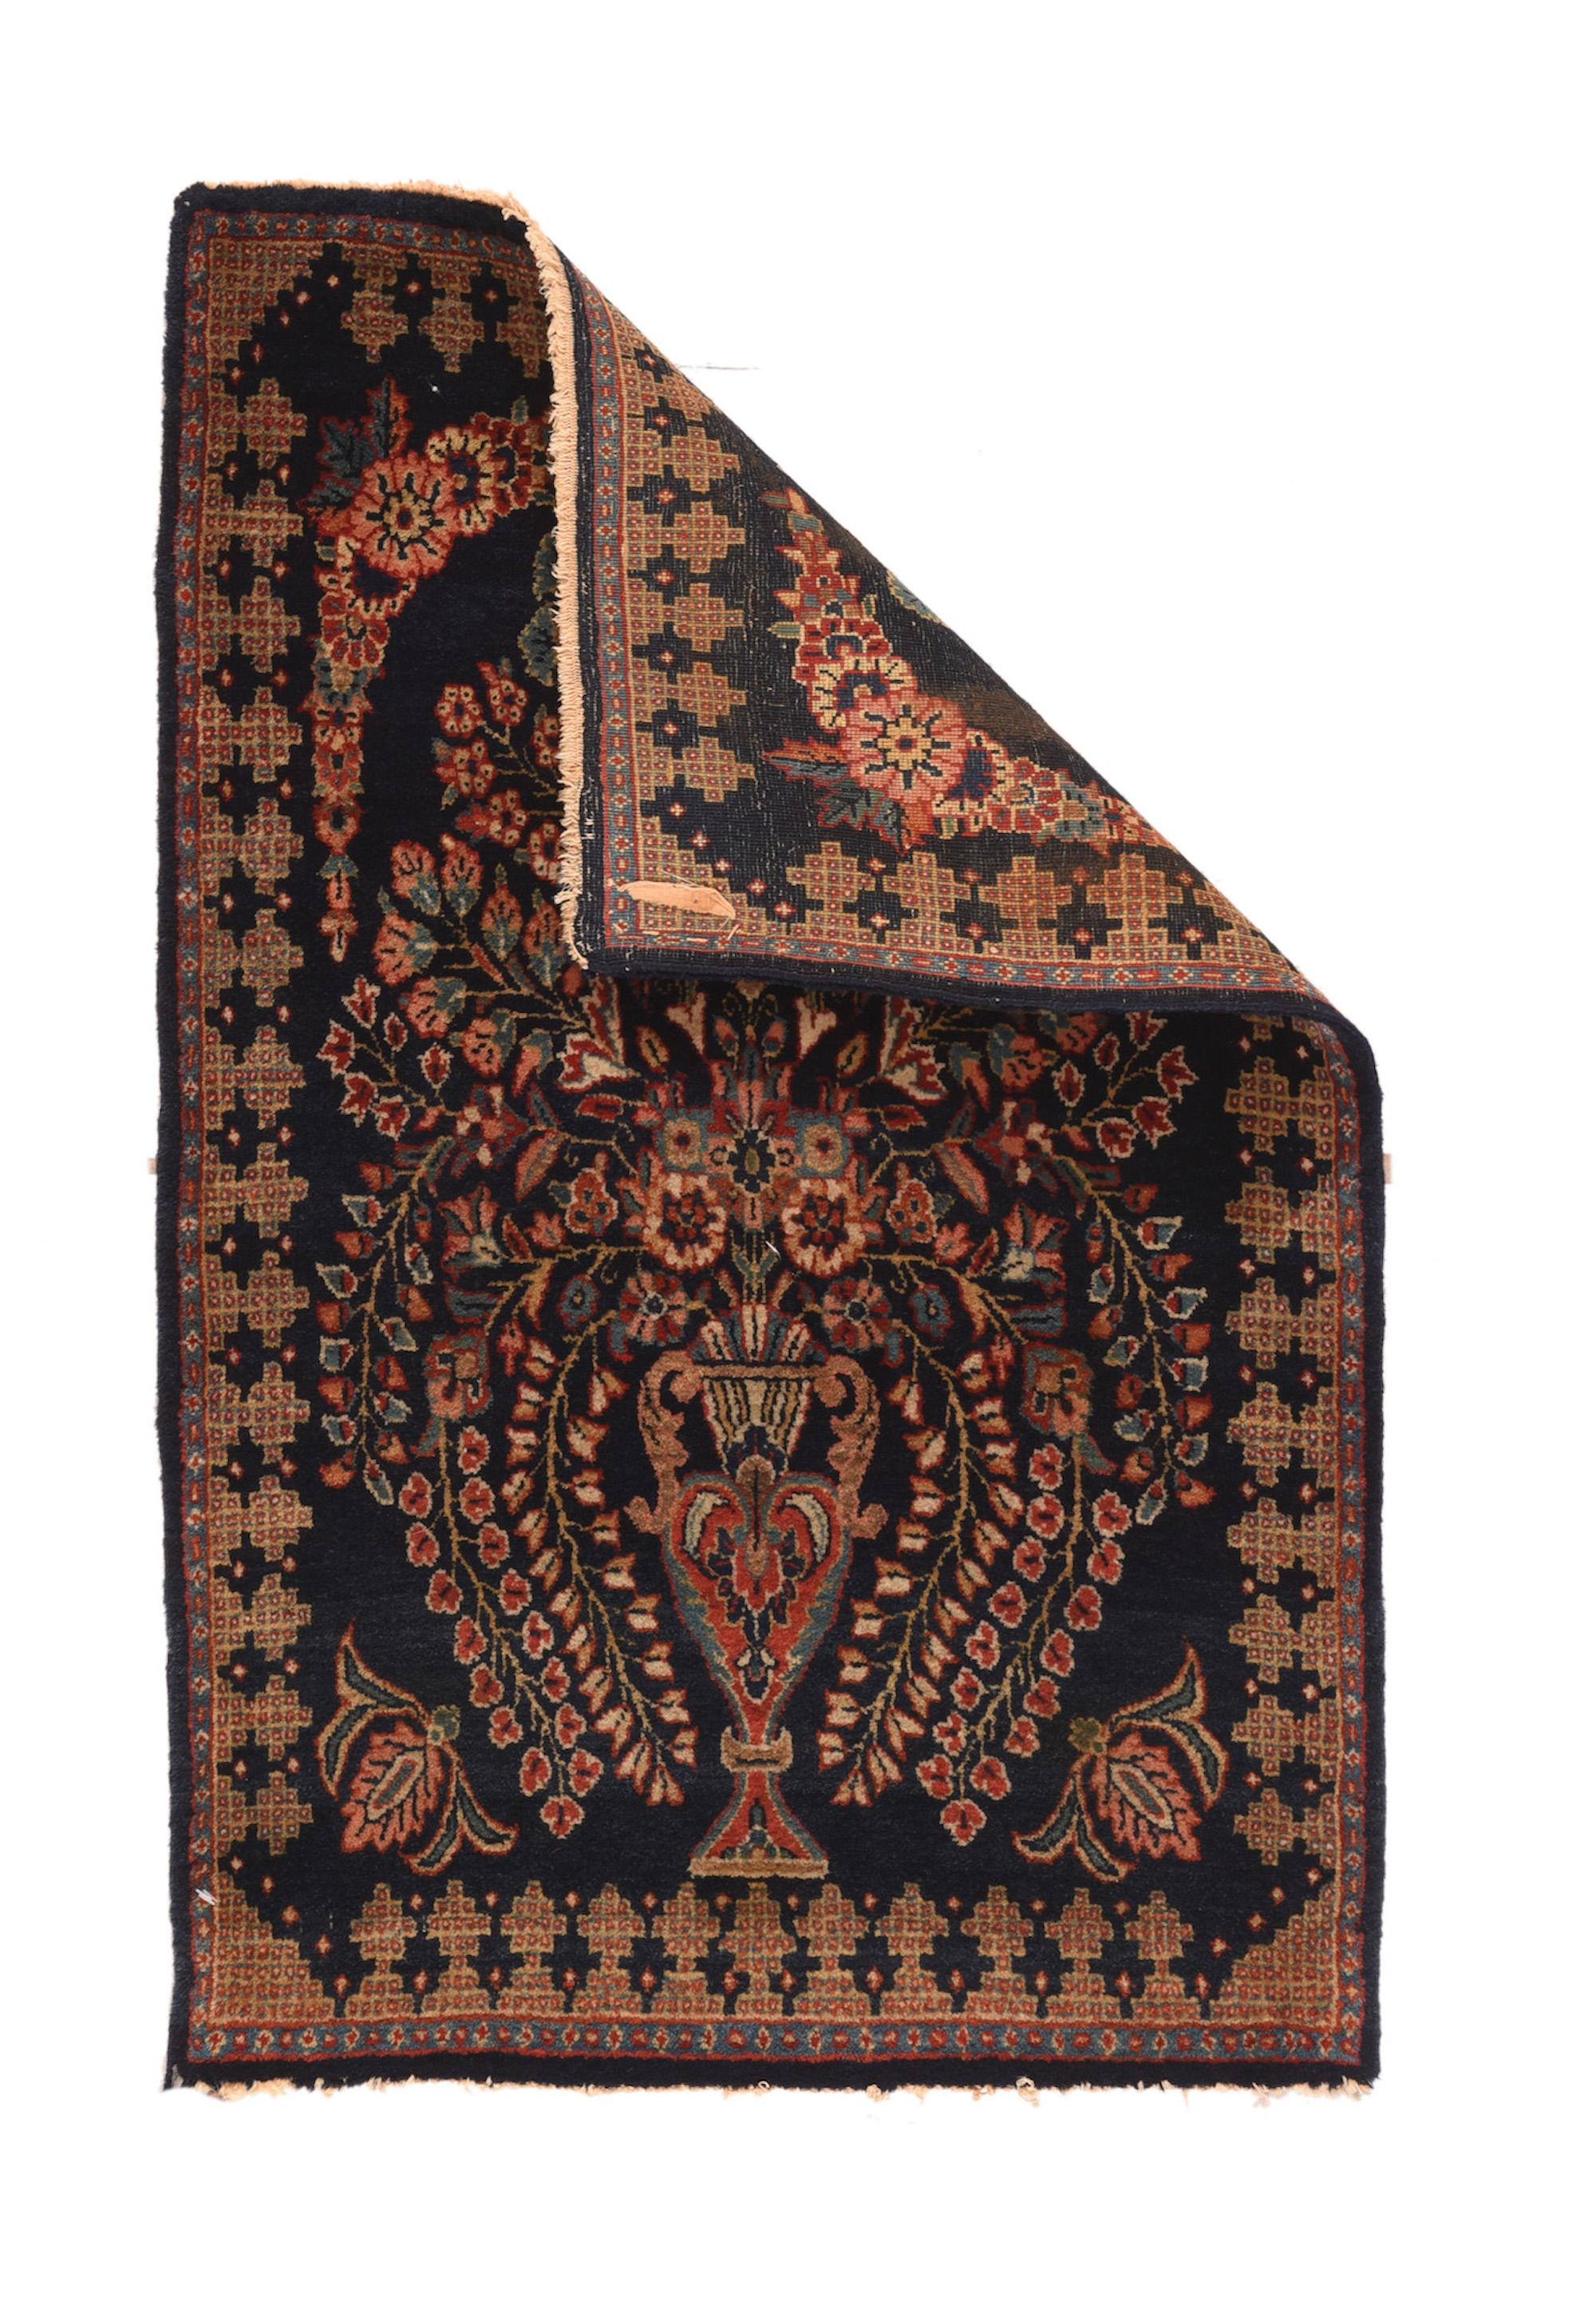 Le tapis Vintage Kashan mesure 1'9'' x 2'10''. À la manière du 